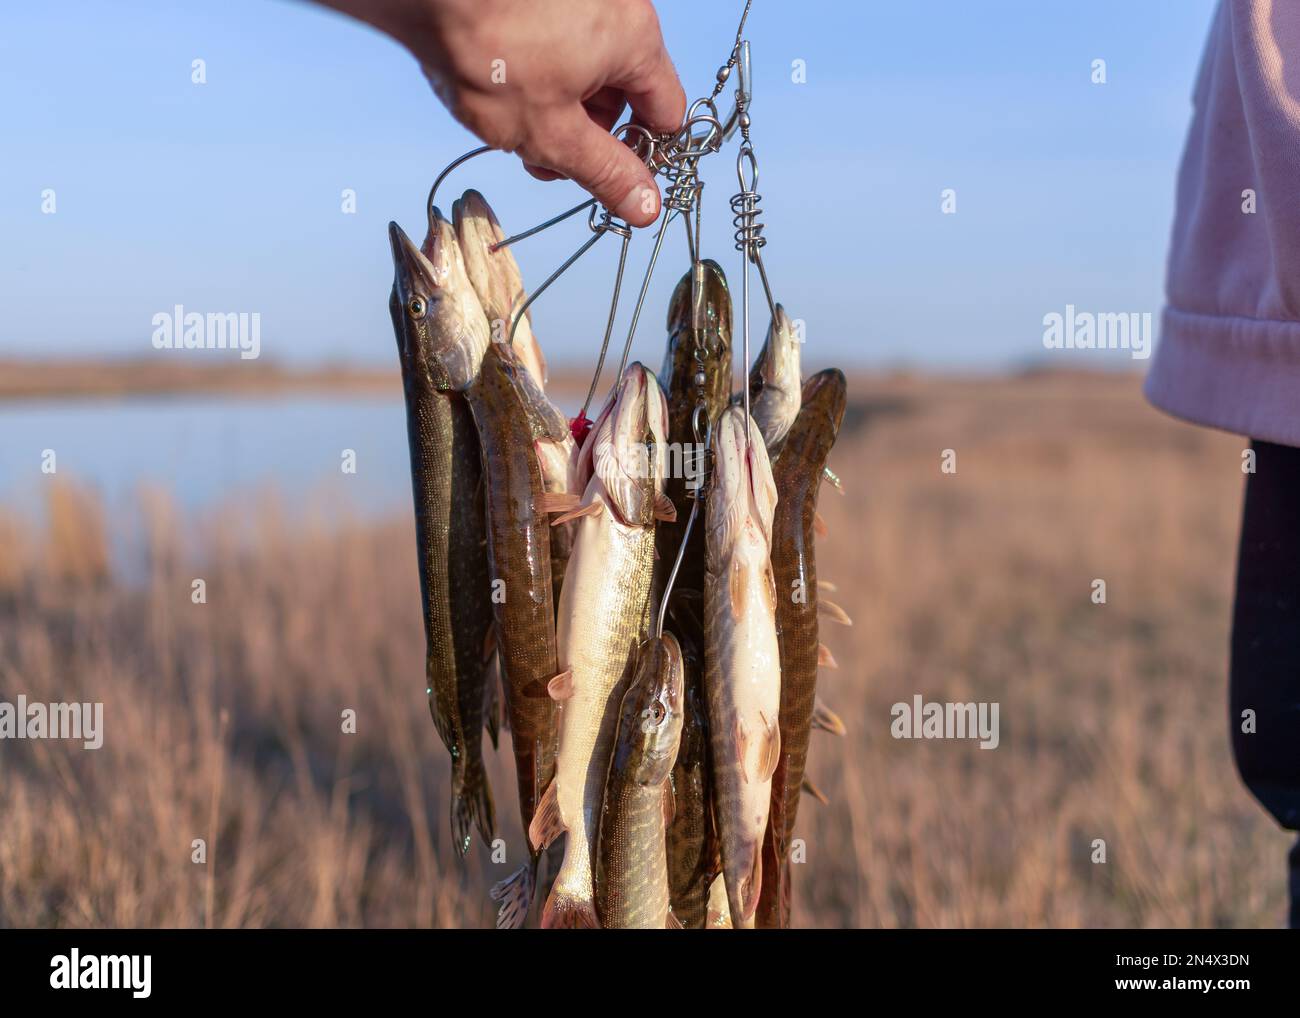 Die Hand des Fischers, der einen gefangenen Fisch hält, viele Hechte, die Kukan auf dem Hintergrund der anderen Person hängen, und Seen. Stockfoto